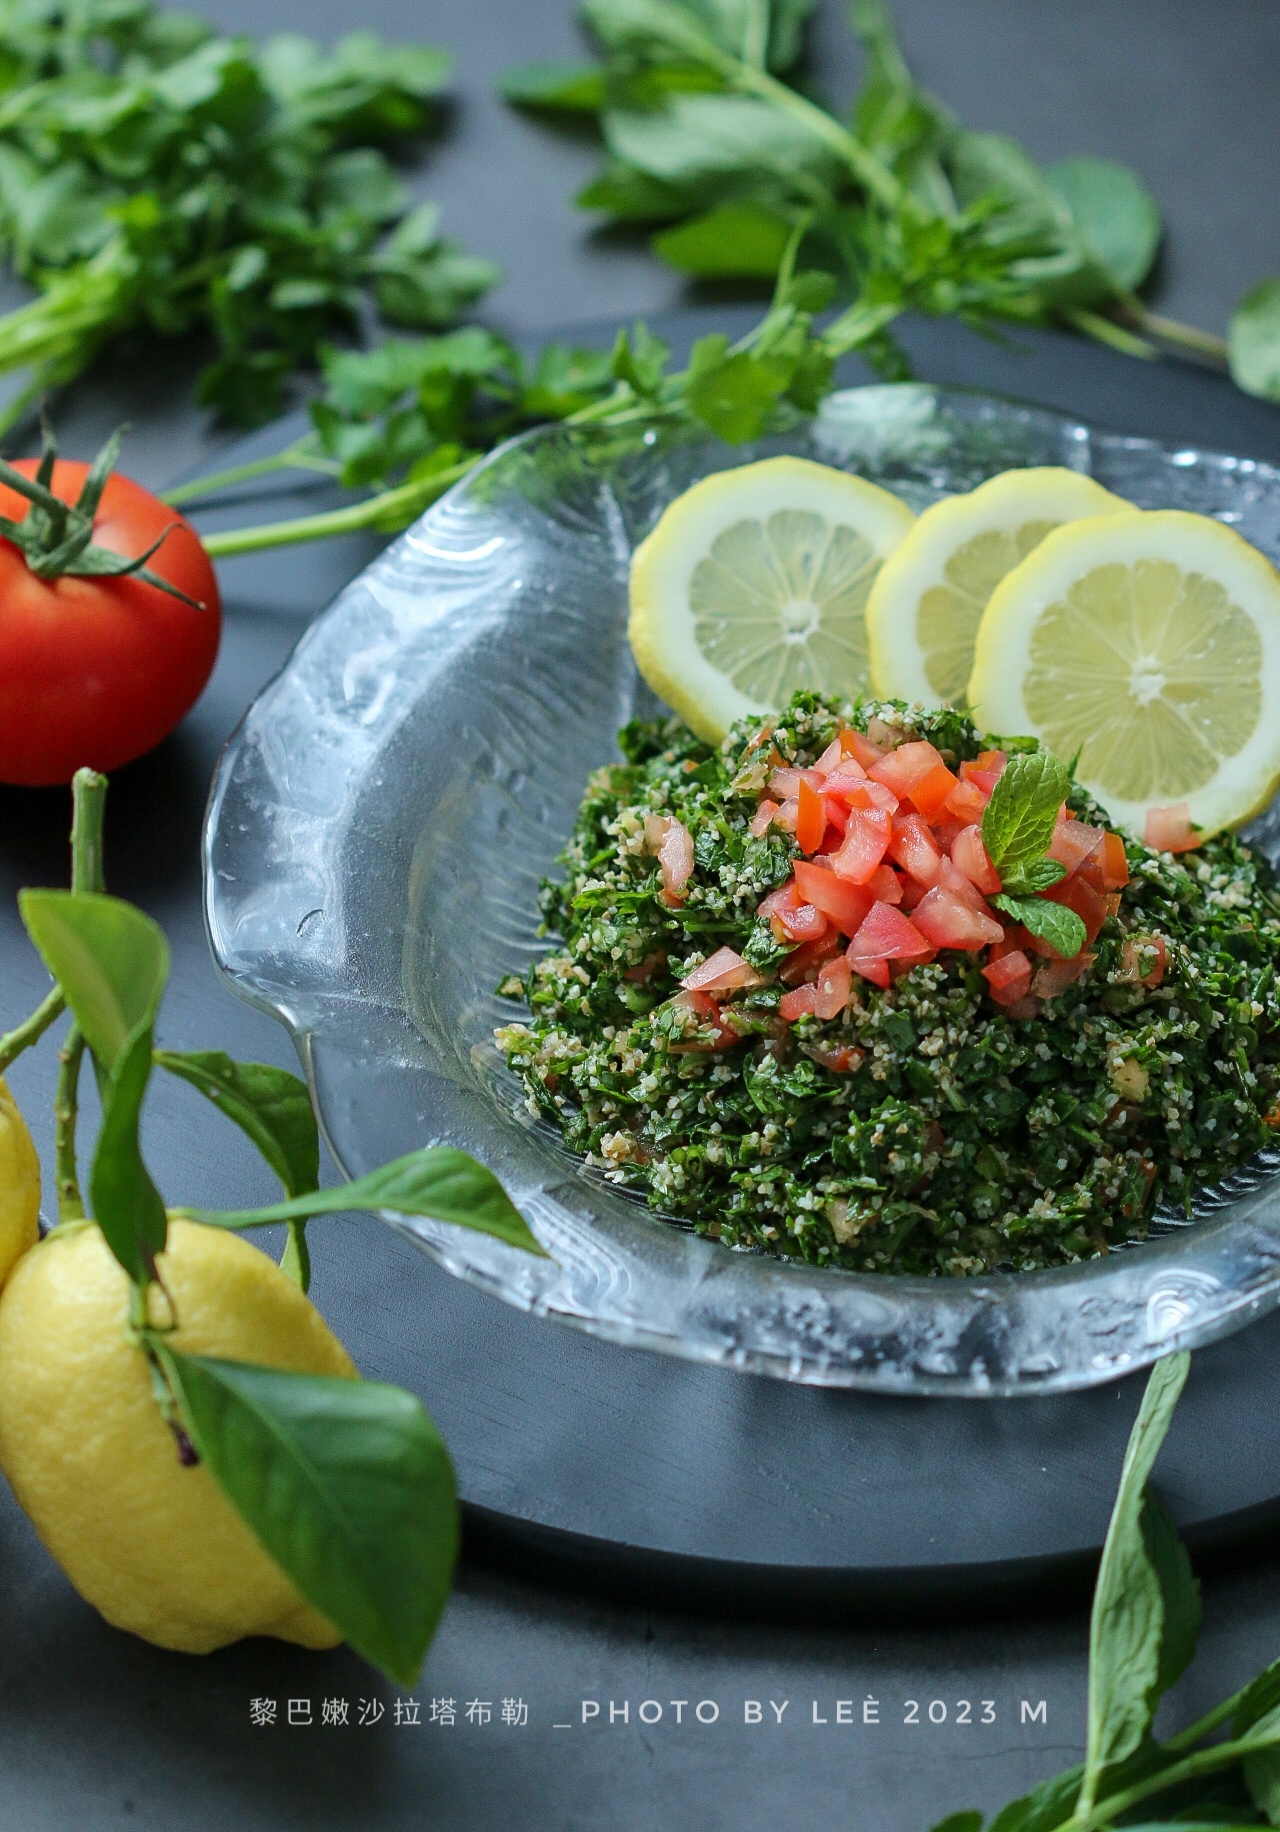 黎巴嫩沙拉塔布勒Tabbouleh salad的做法